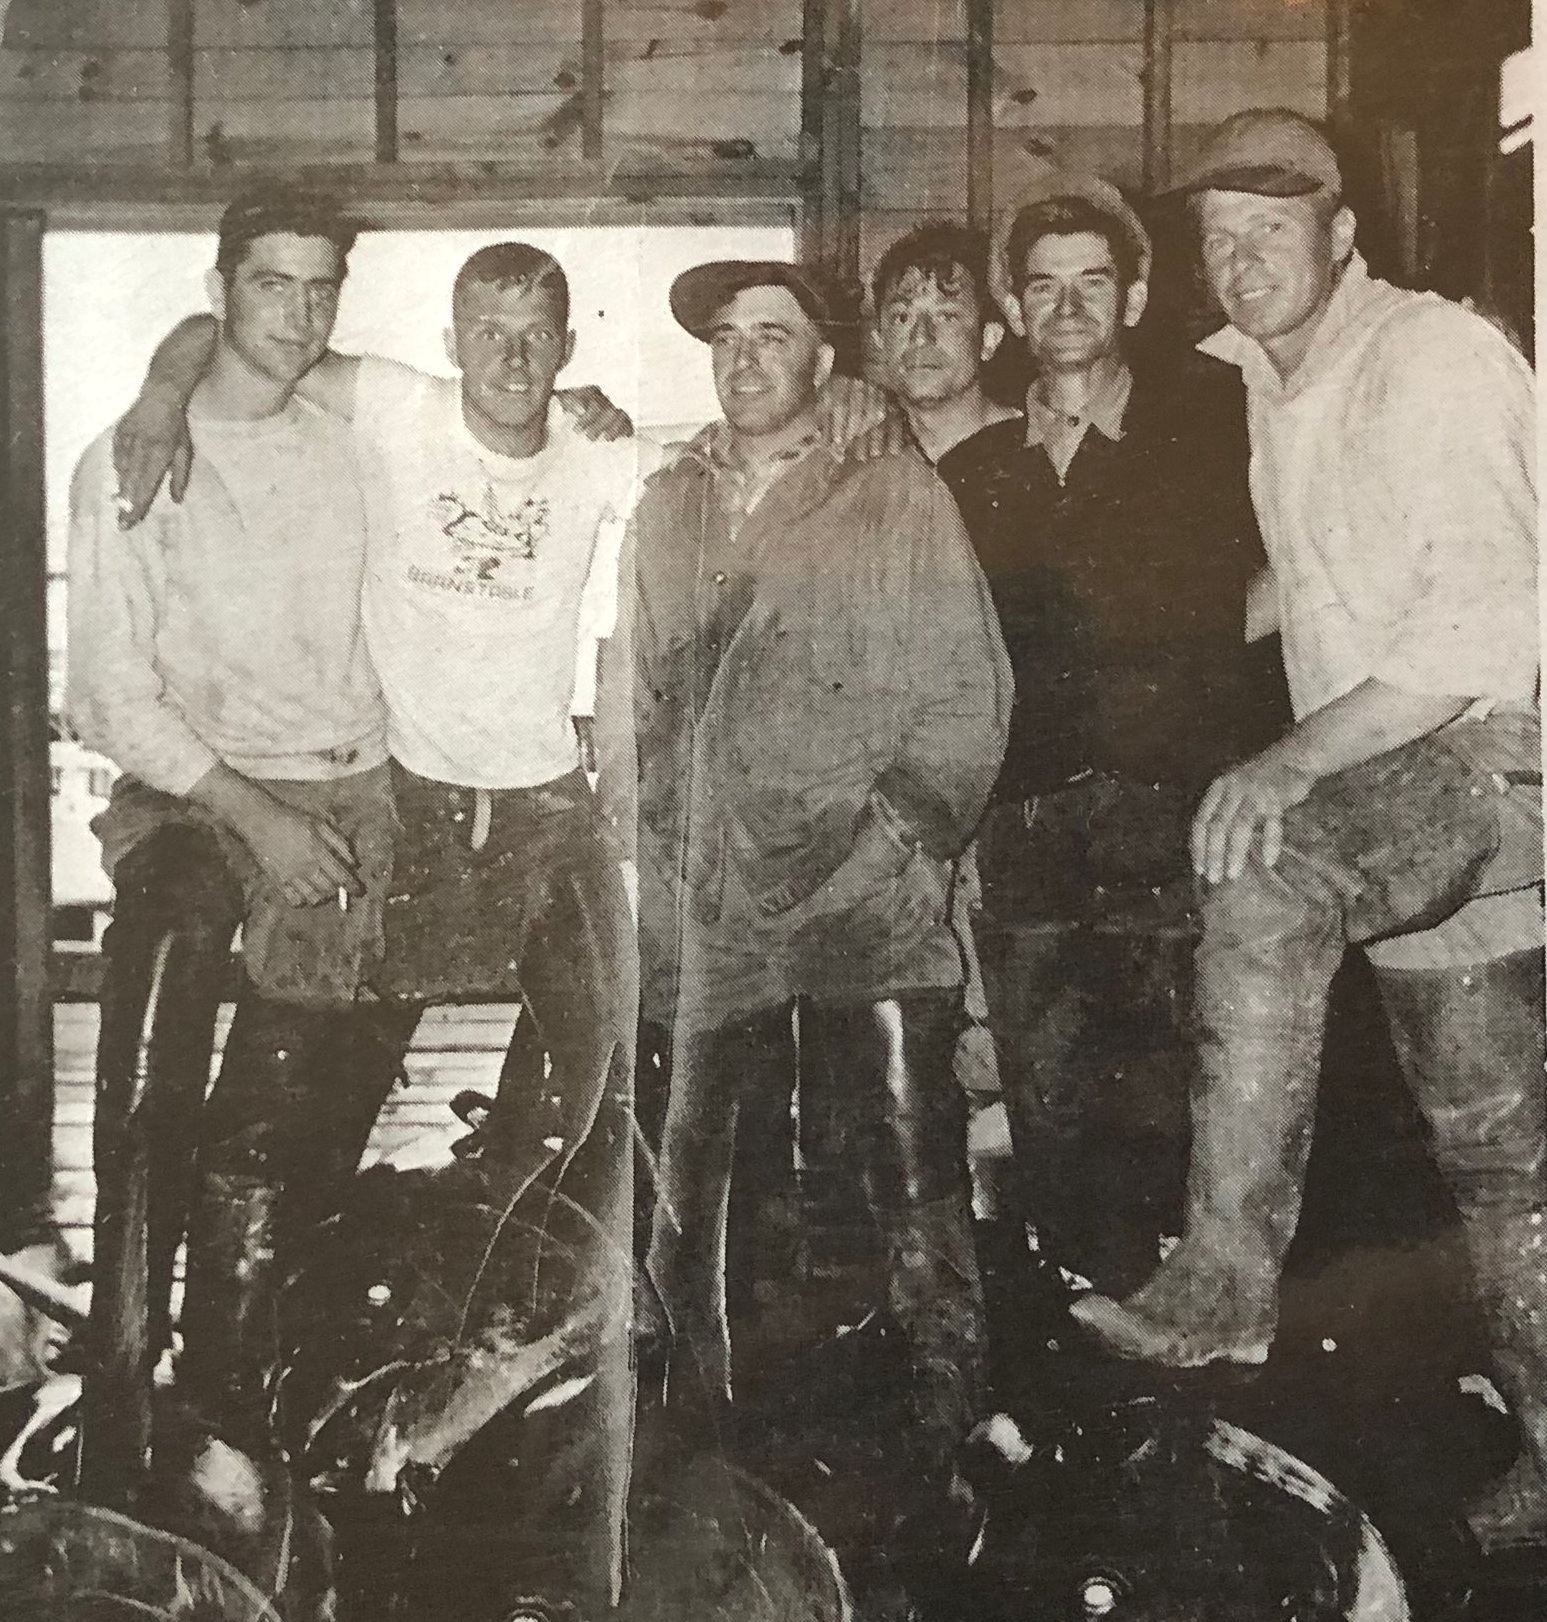 The Crew: left to right Al Van Knowe, Merle Marshall, Mike Goulart, Tony DeMartino, Joe Neves, Adam Rupkus 1949